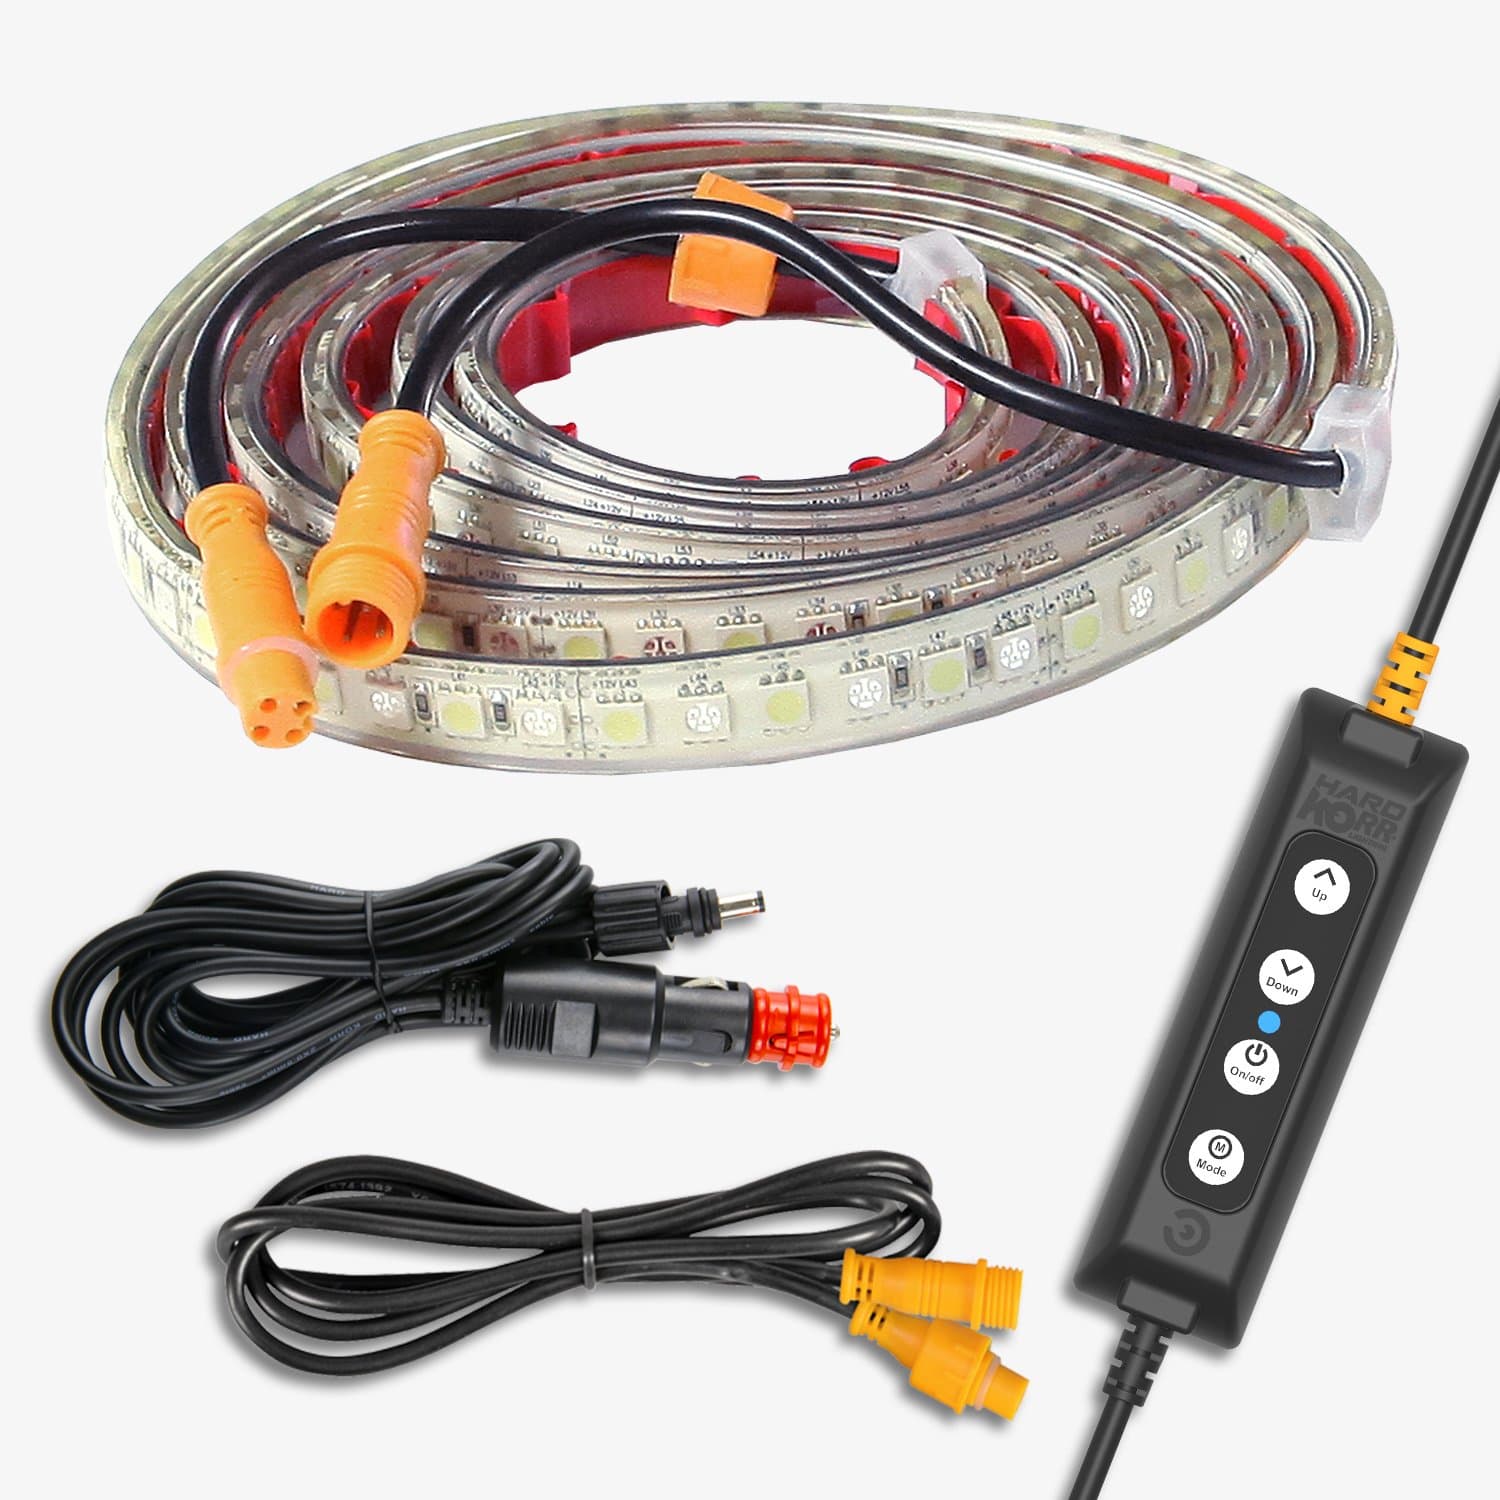 http://gtfoverland.com/cdn/shop/products/hard-korr-lights-led-light-strip-hard-korr-2m-tri-color-flexible-led-tape-lights-29886767366307.jpg?v=1631217619